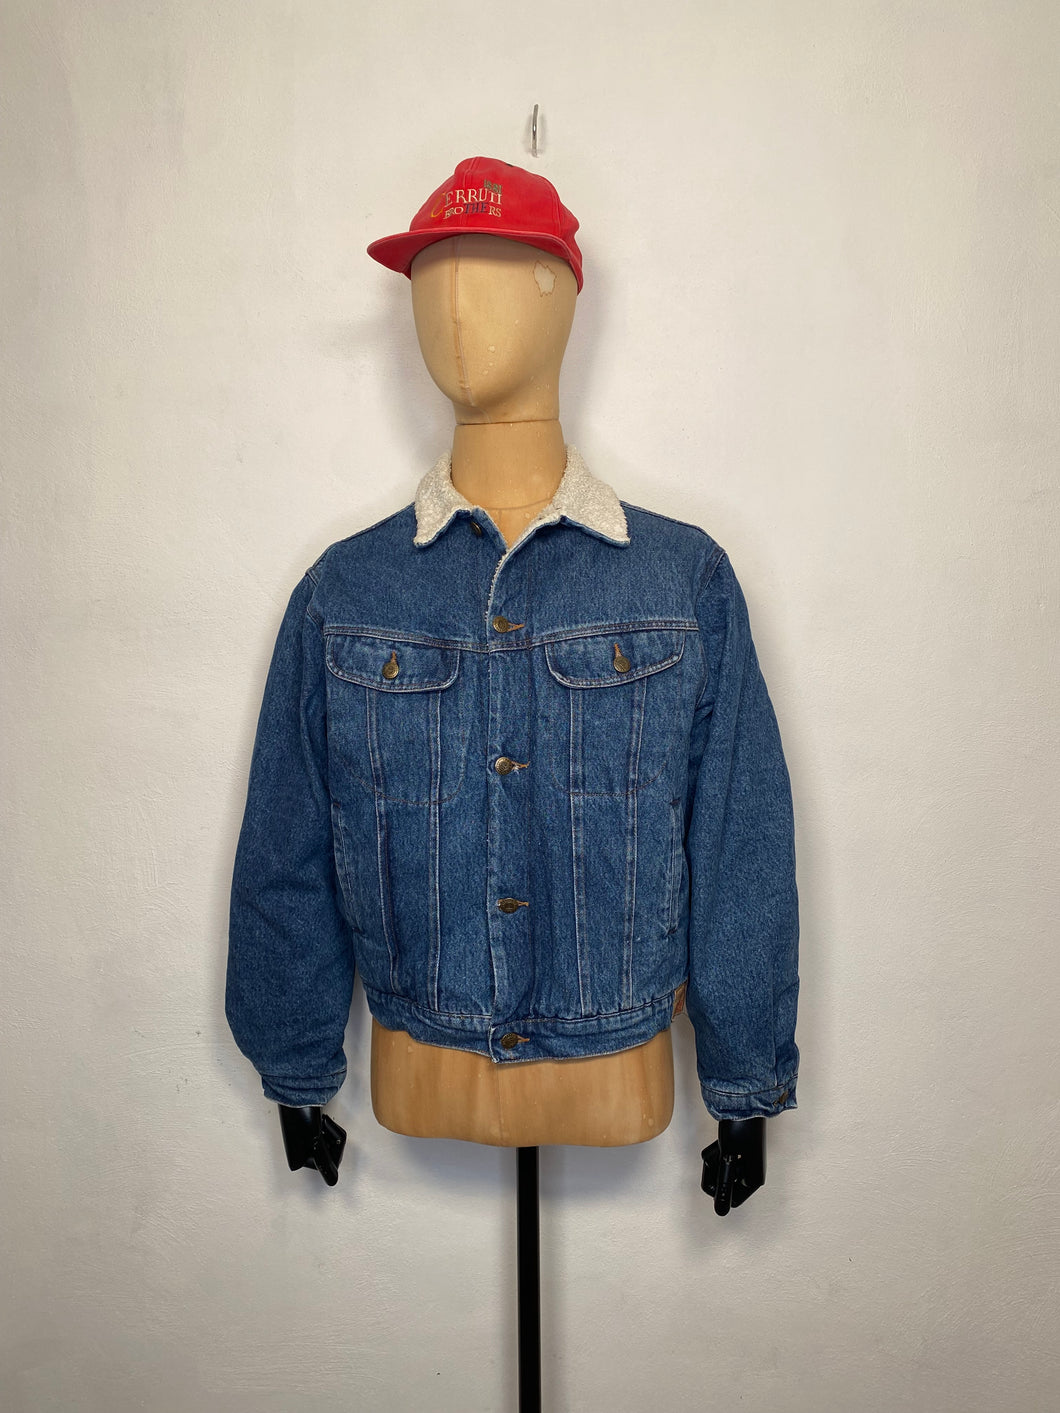 1980s Fiorucci denim jacket / teddy lining